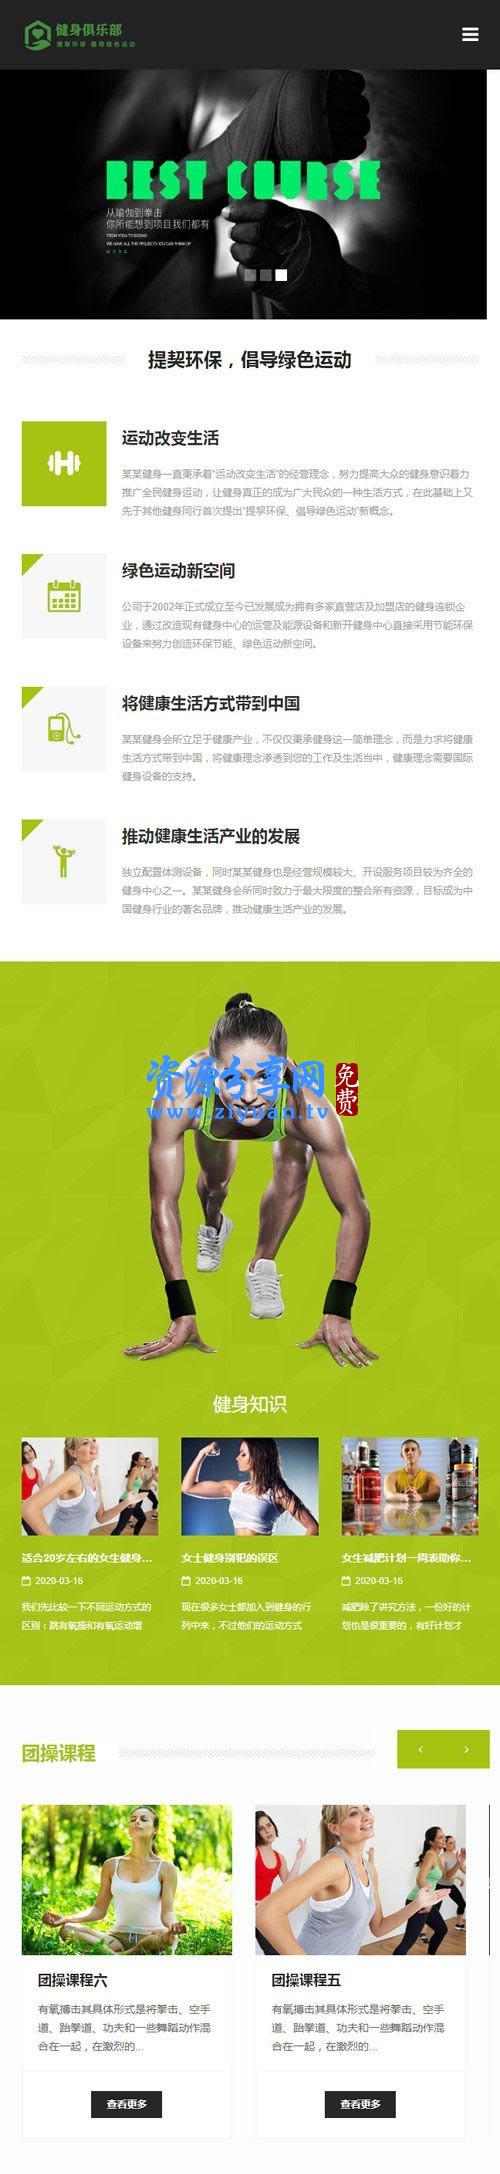 织梦 dedecms 绿色响应式健身俱乐部企业网站模板